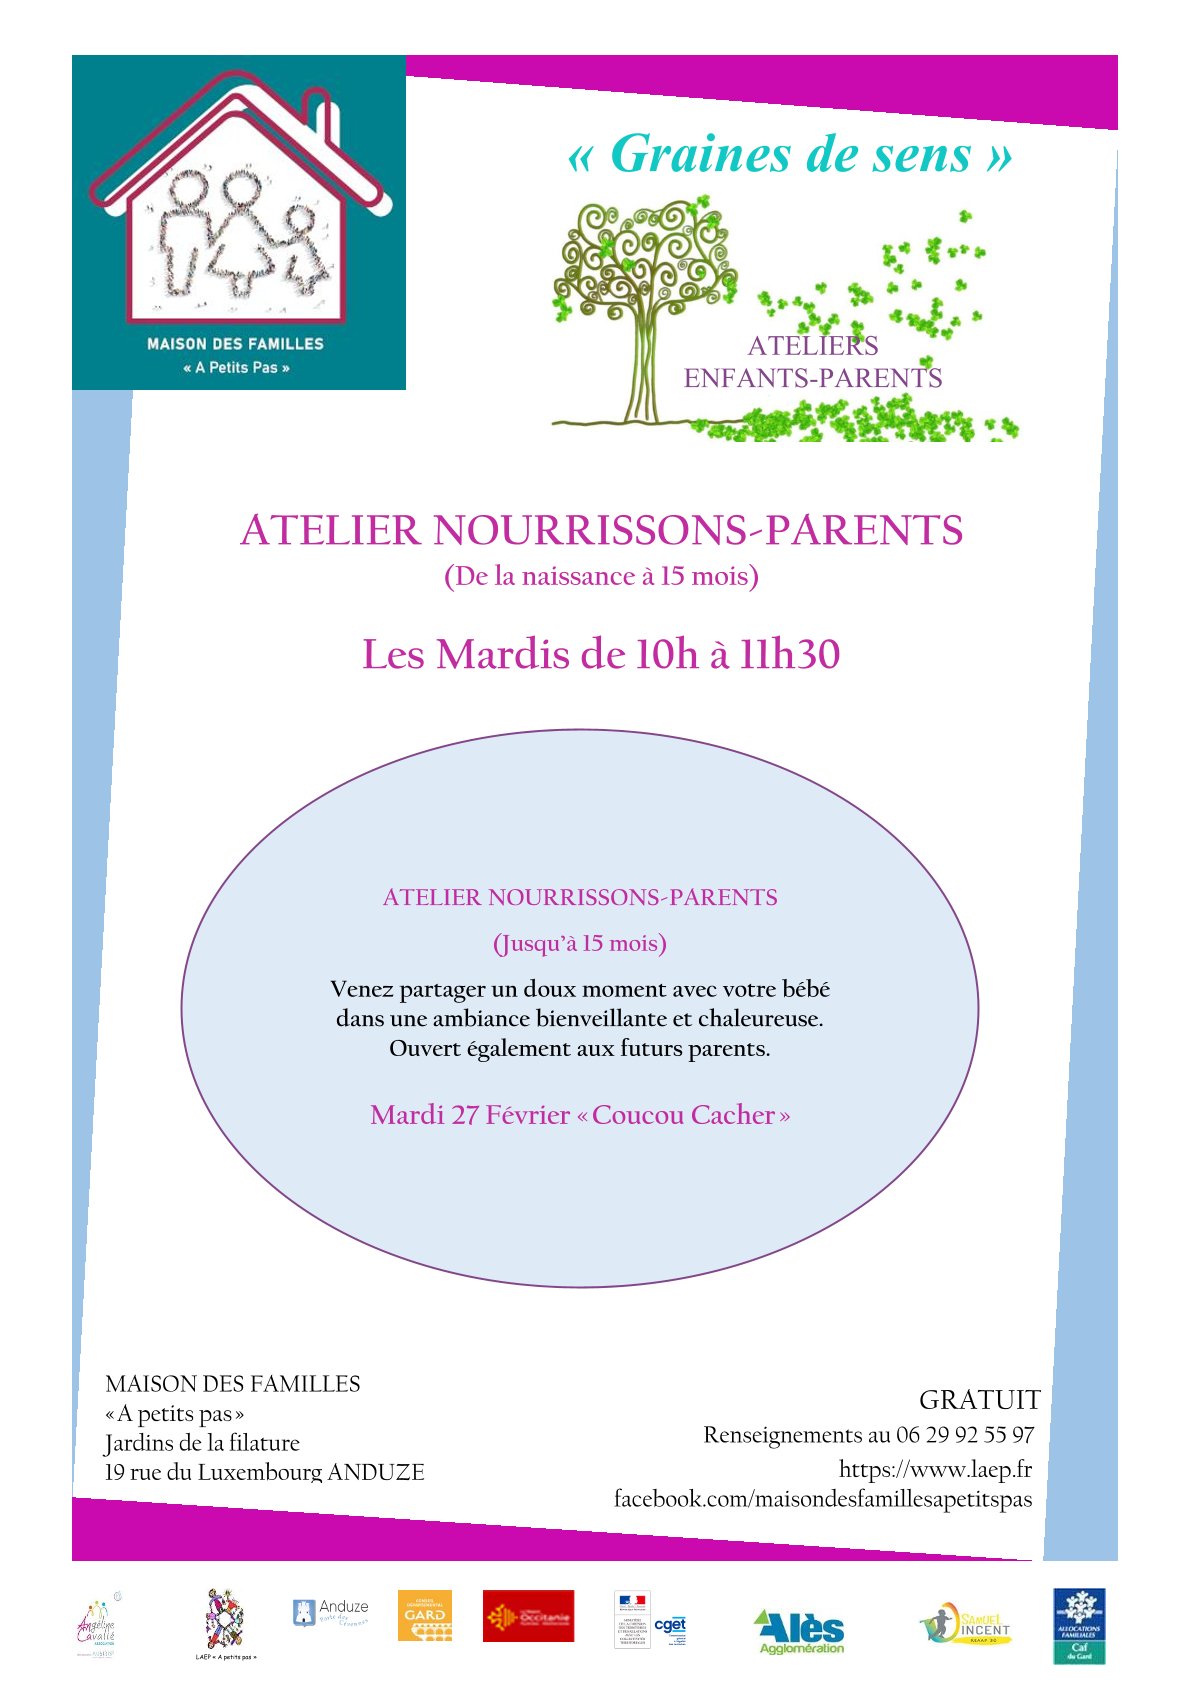 Atelier Nourrissons/Parents "Coucou/Caché"